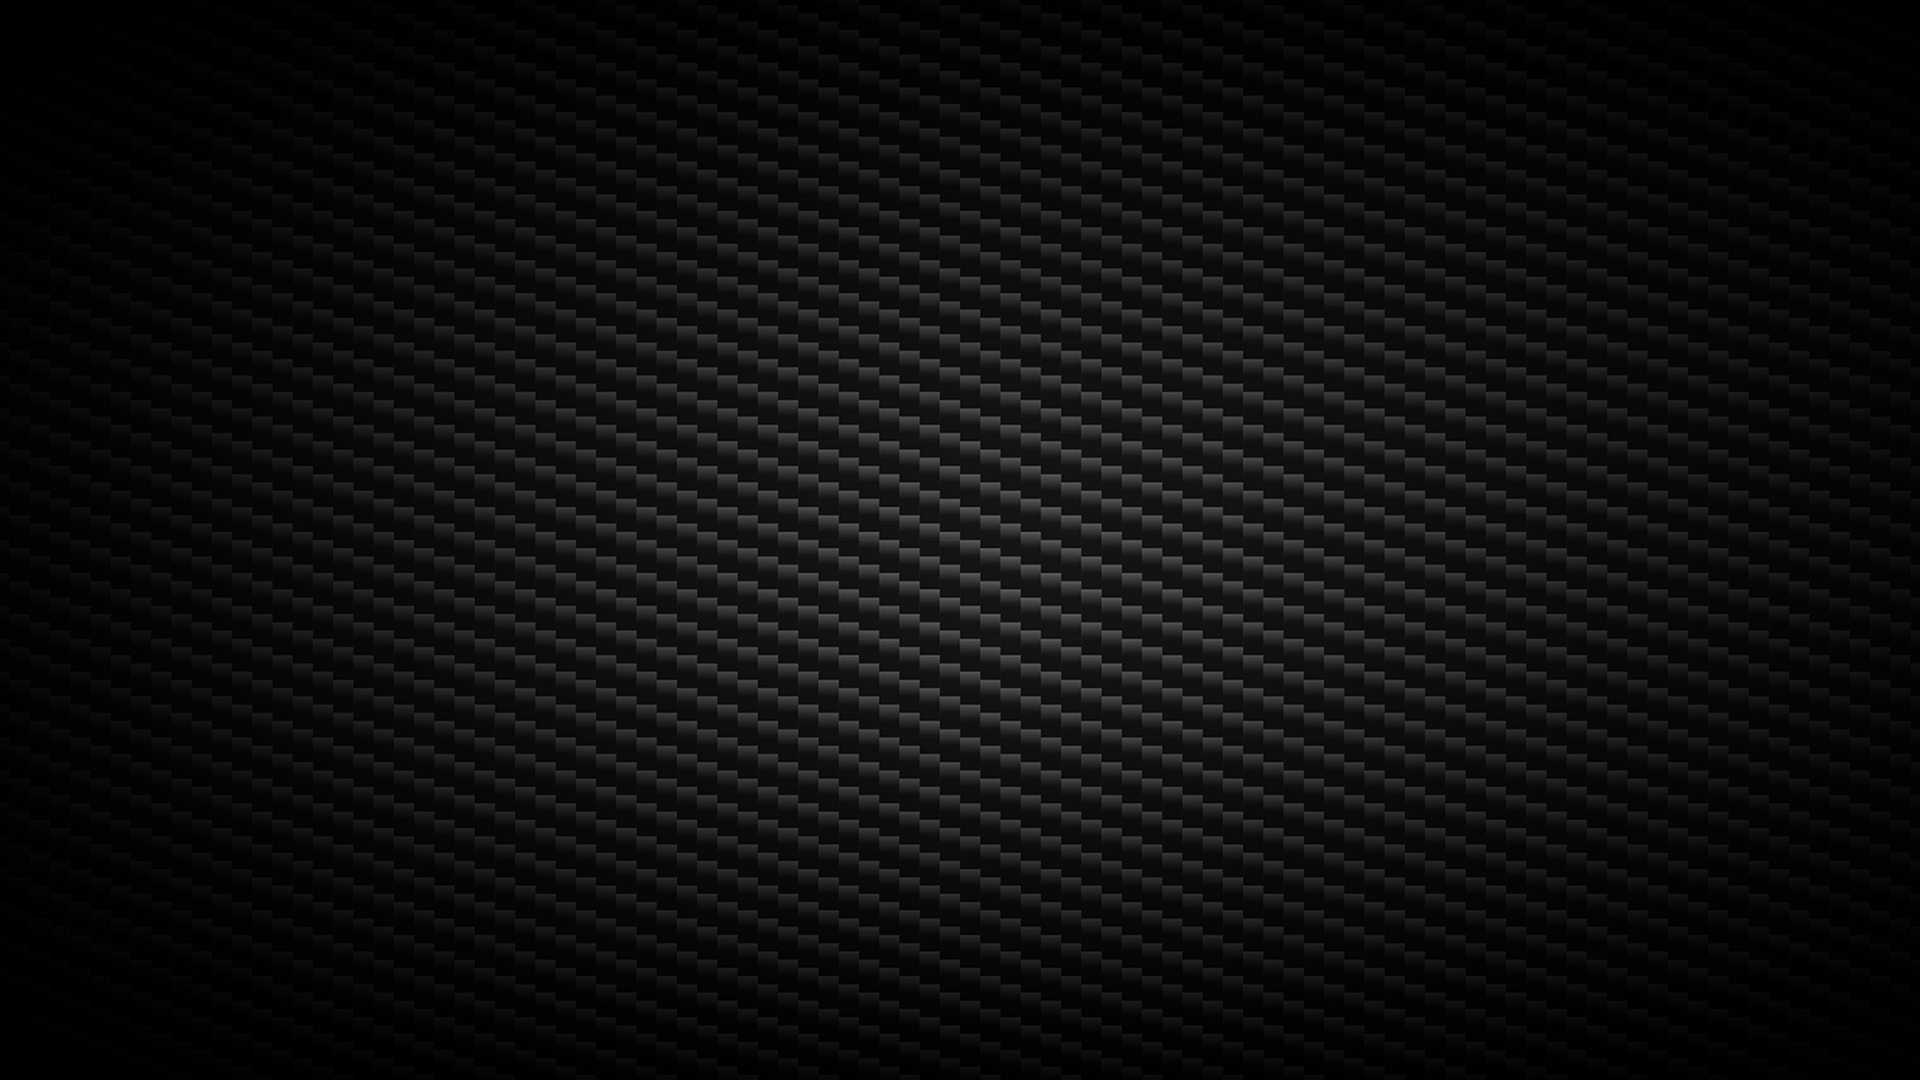 HD Matt Black Wallpaper - iXpap